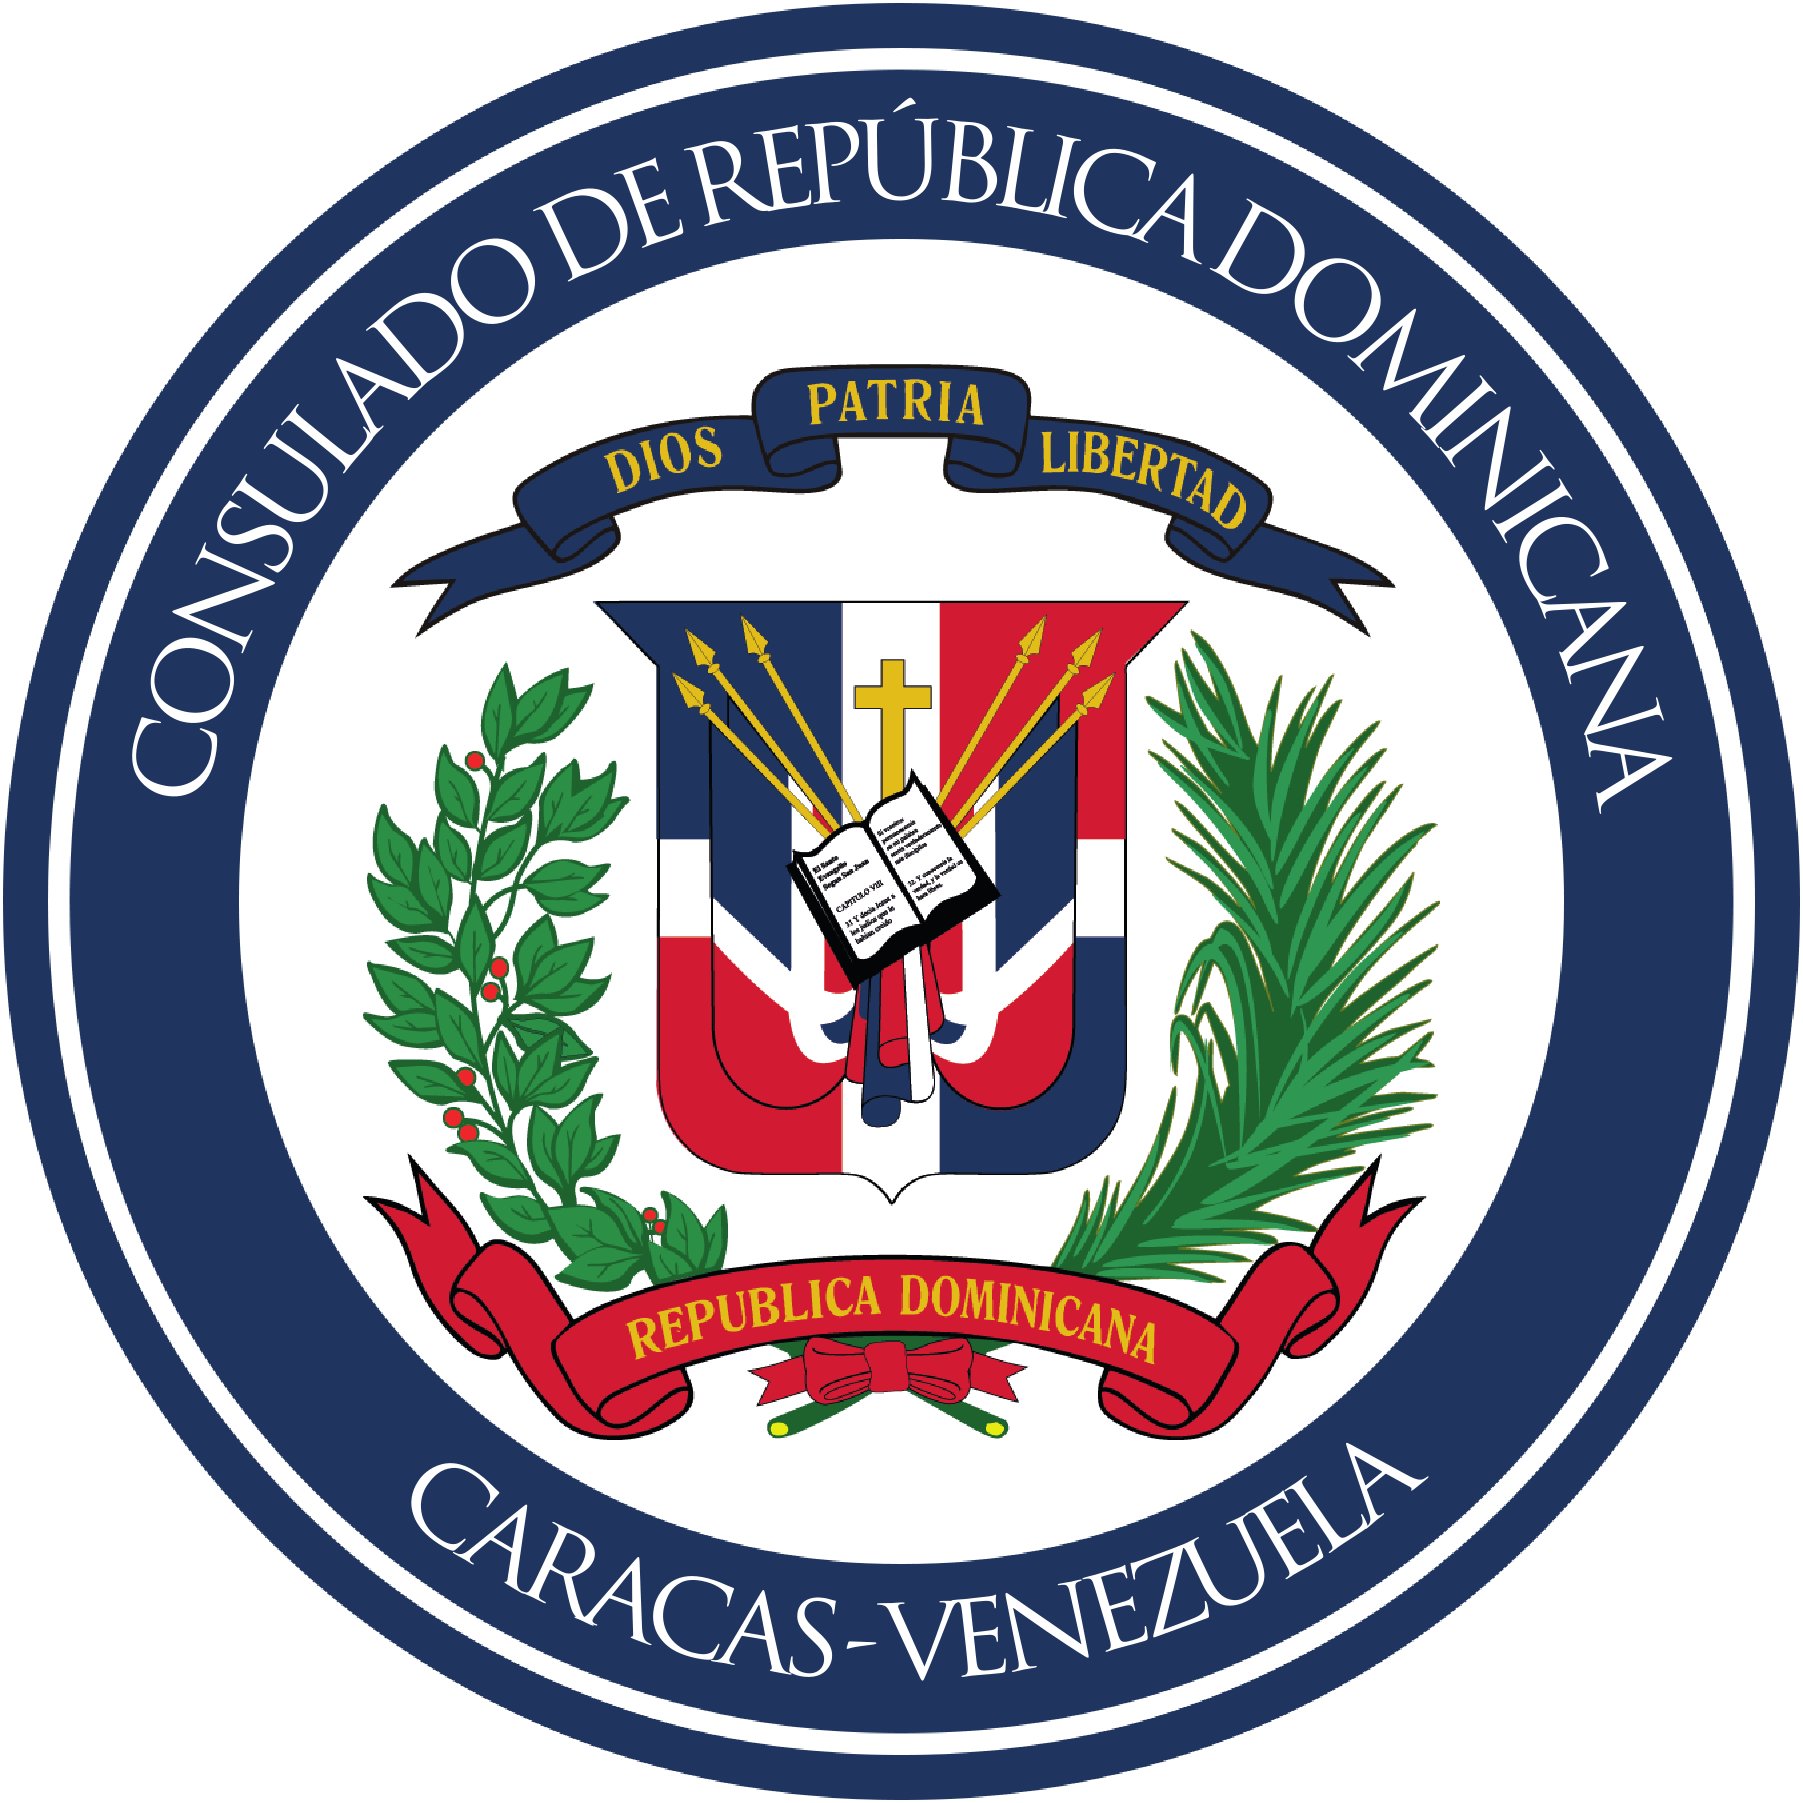 Cuenta Oficial del Consulado General de la República Dominicana en Venezuela. 
Contacto:📩consulado.rd.ve@gmail.com
0212-2638256
Instagram: @consuladord_ve